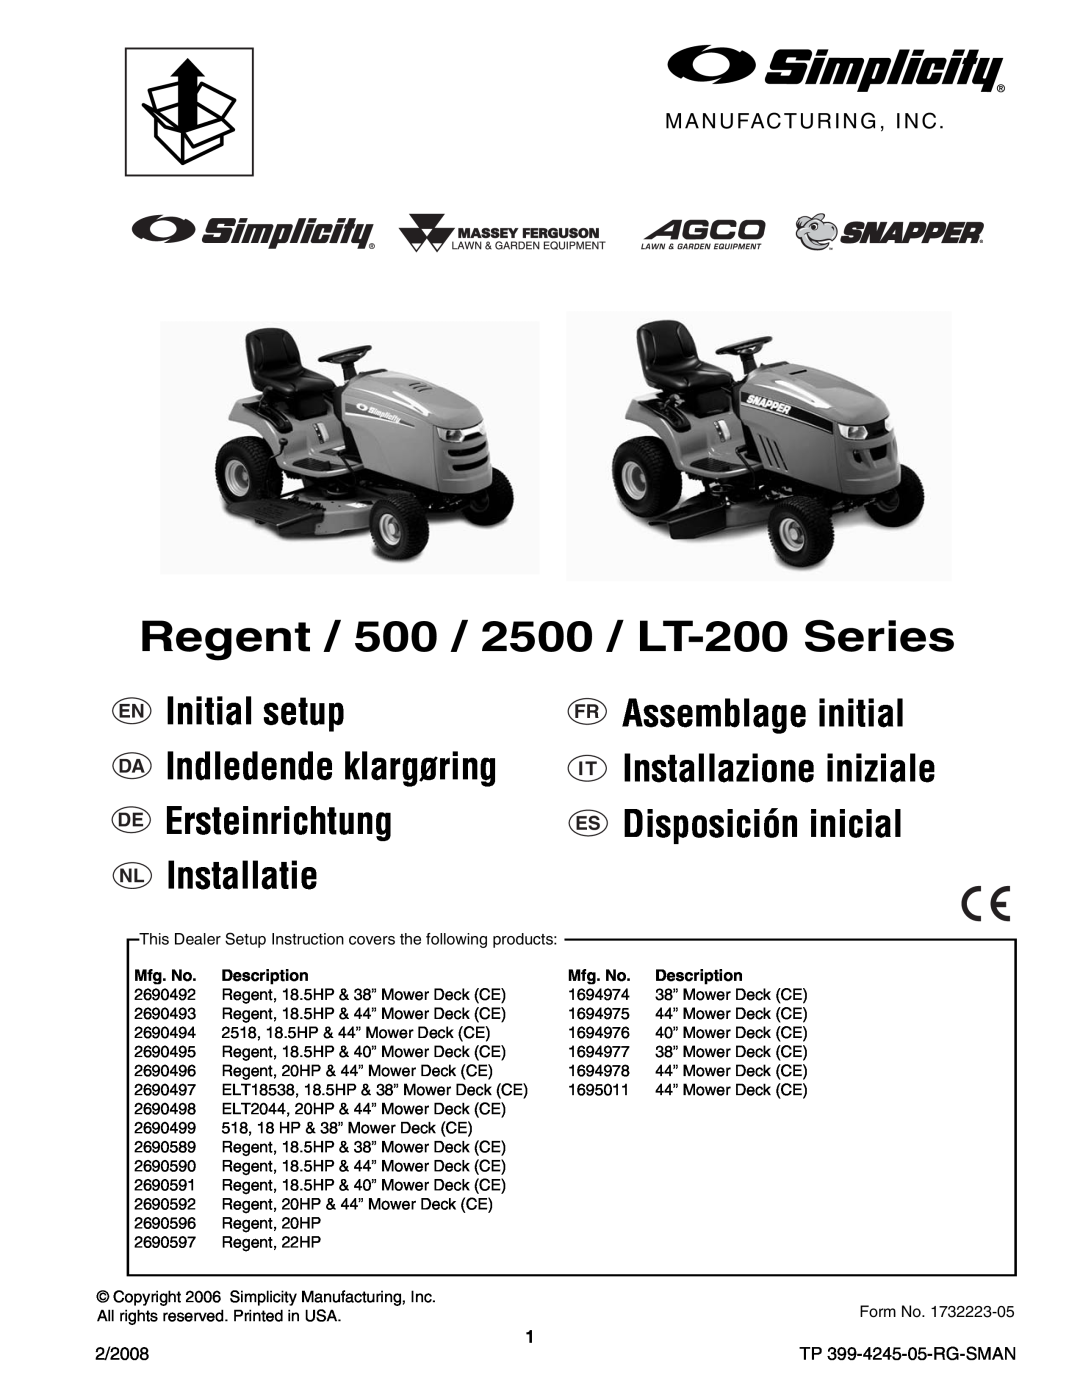 Simplicity manual Regent / 500 / 2500 / LT-200Series, Manufacturing, Inc, En Da De Nl, Fr It Es, Mfg. No, Description 